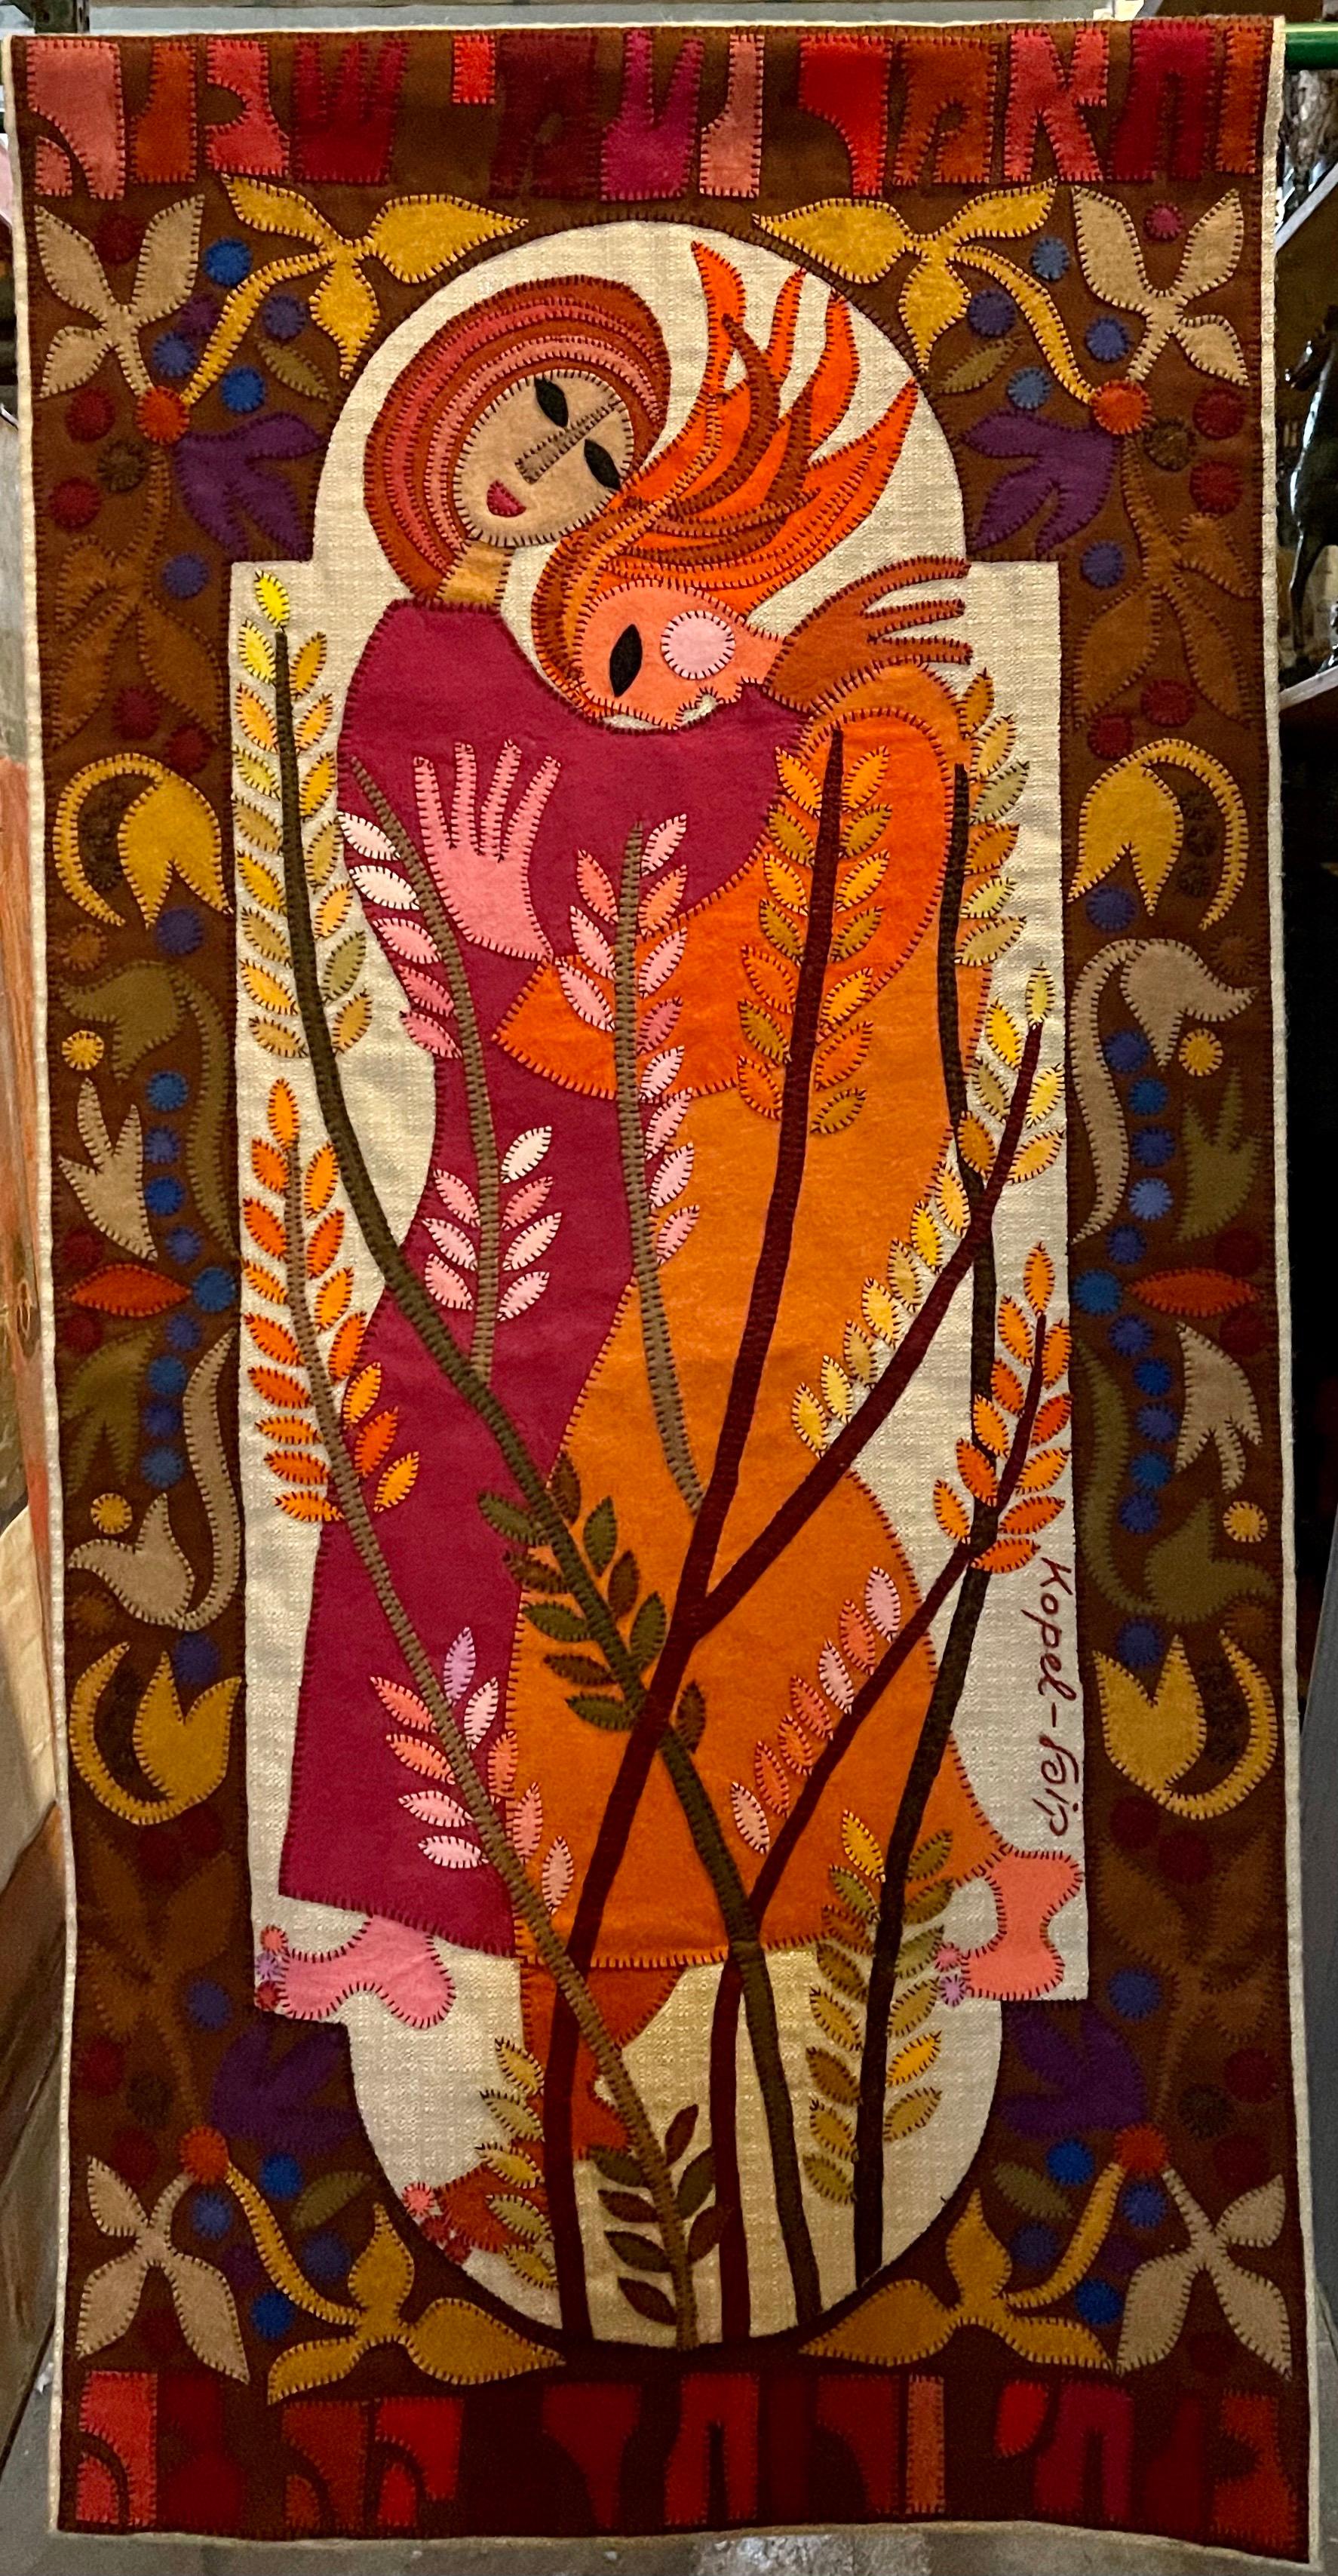 Wool Felt Applique Handmade Kopel Gurwin Israel Judaica Folk Art Signed Tapestry 3